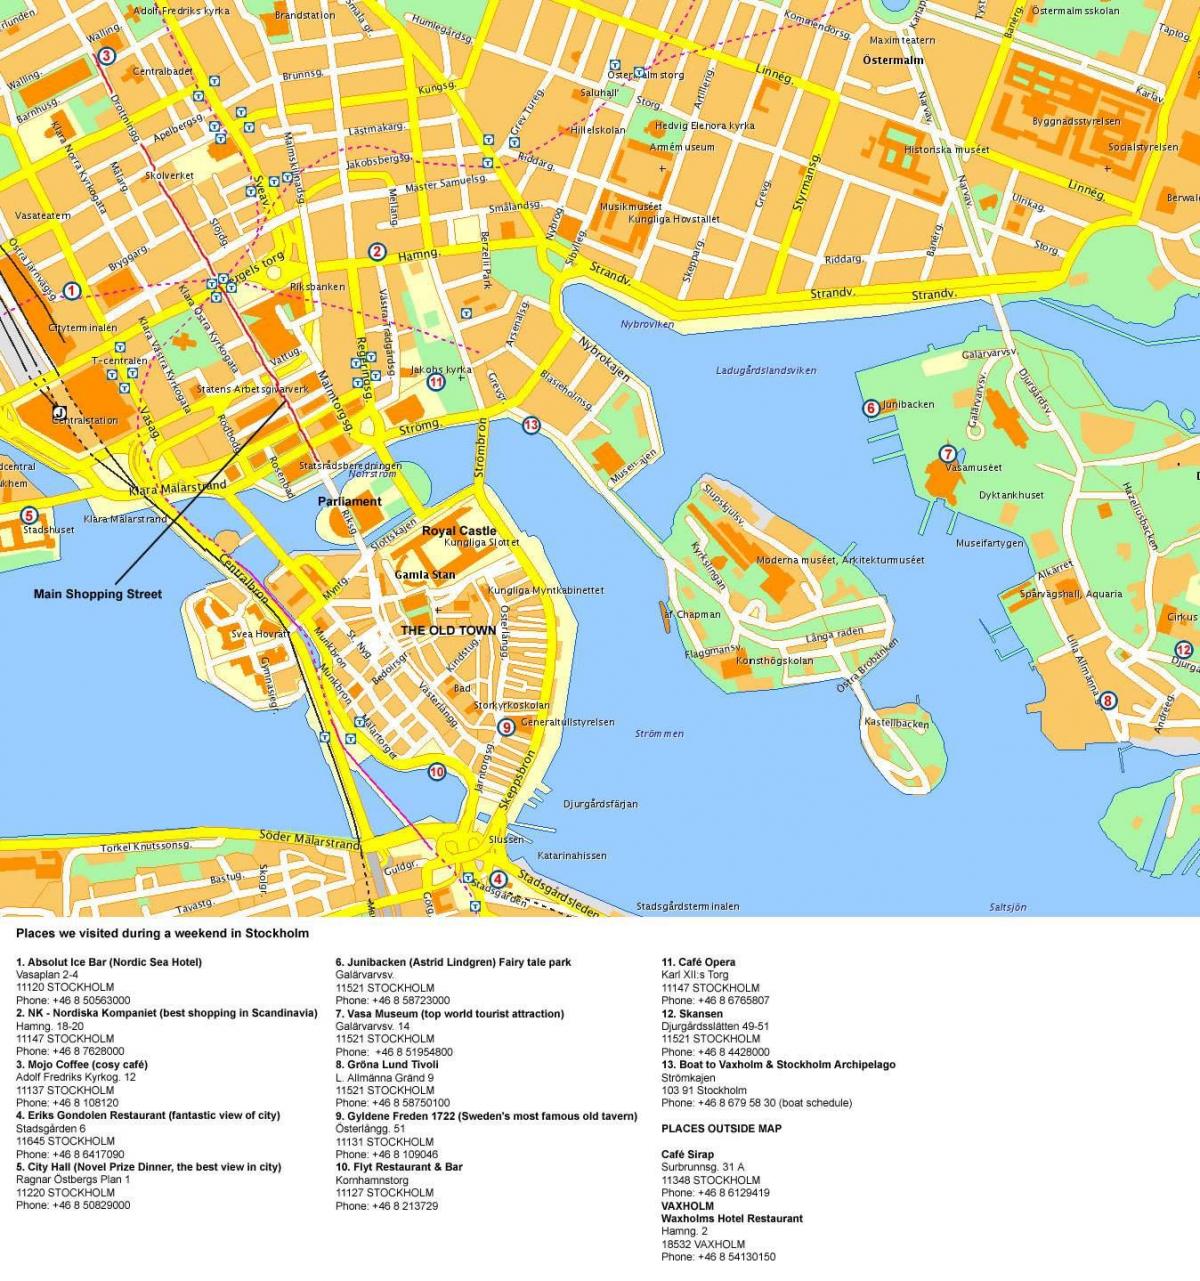 Karte des Stockholmer Stadtzentrums